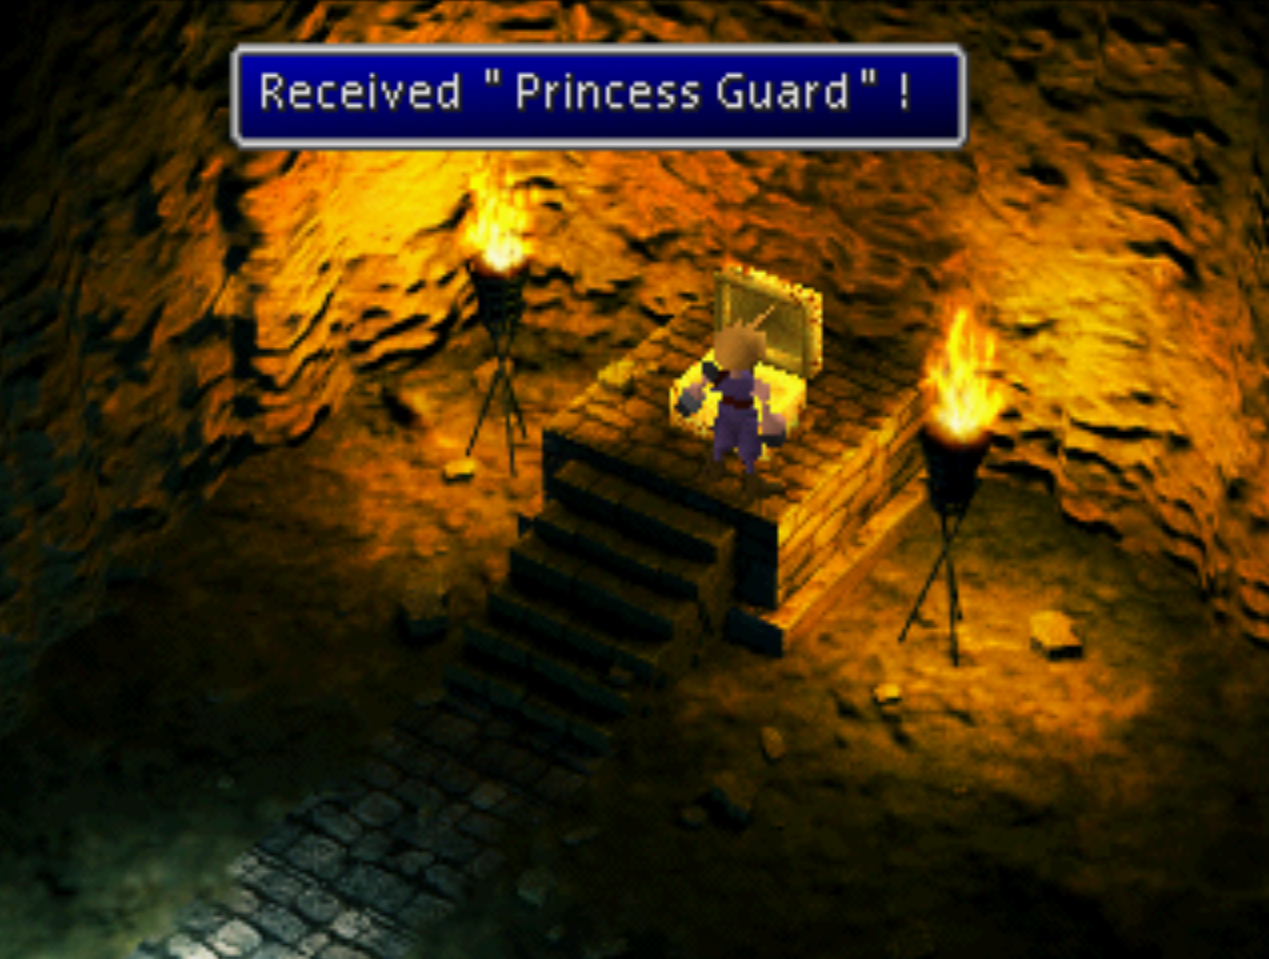 Princess Guard Received